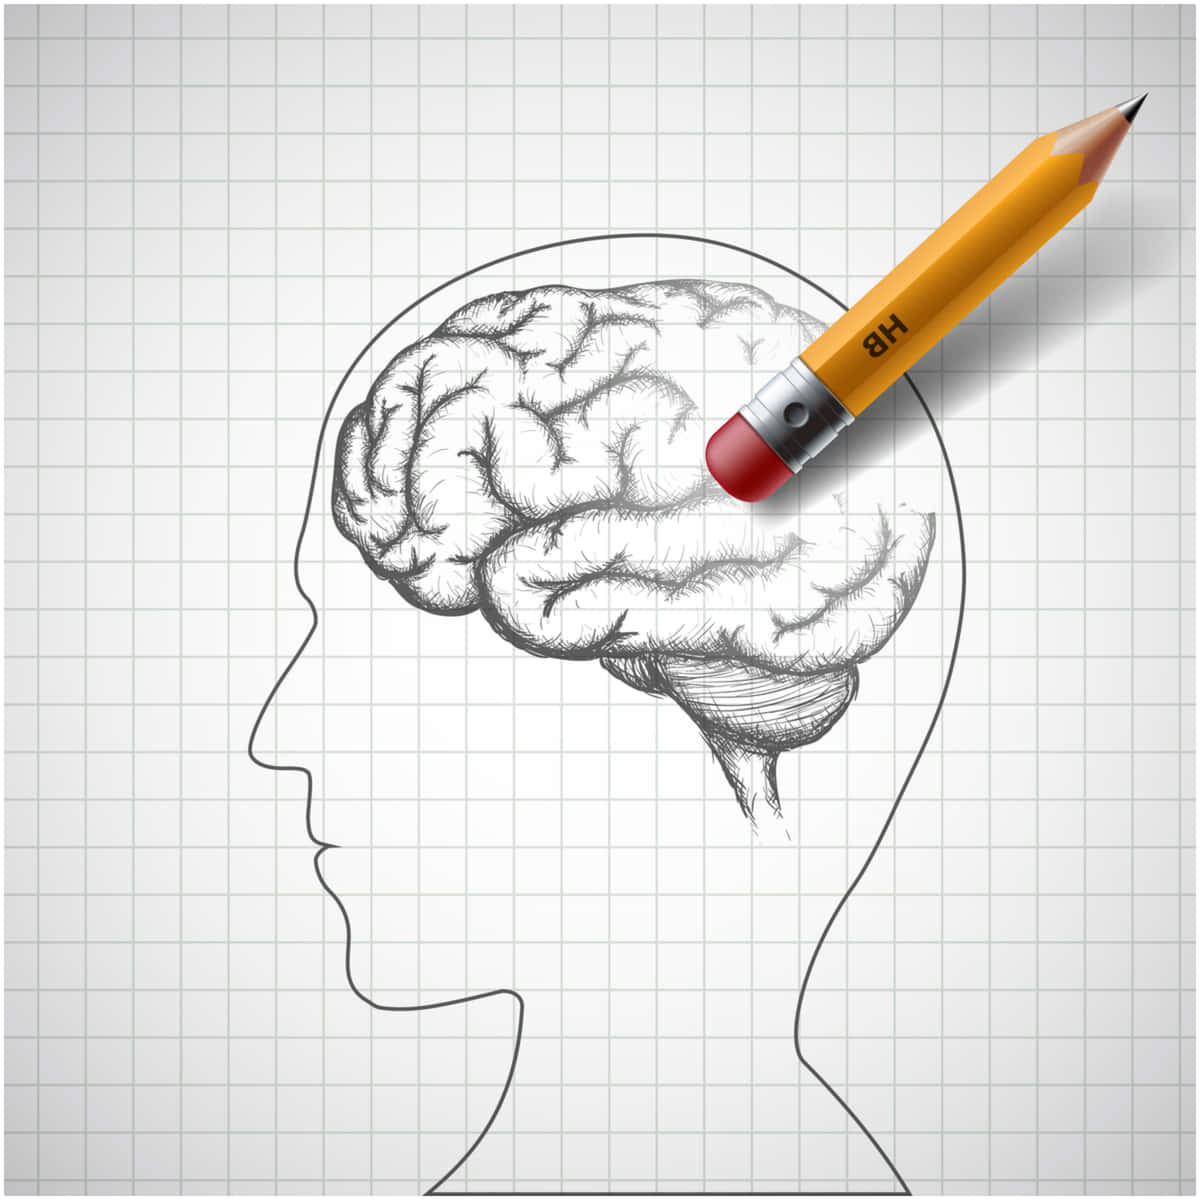 Share 201+ pencil sketch of brain super hot